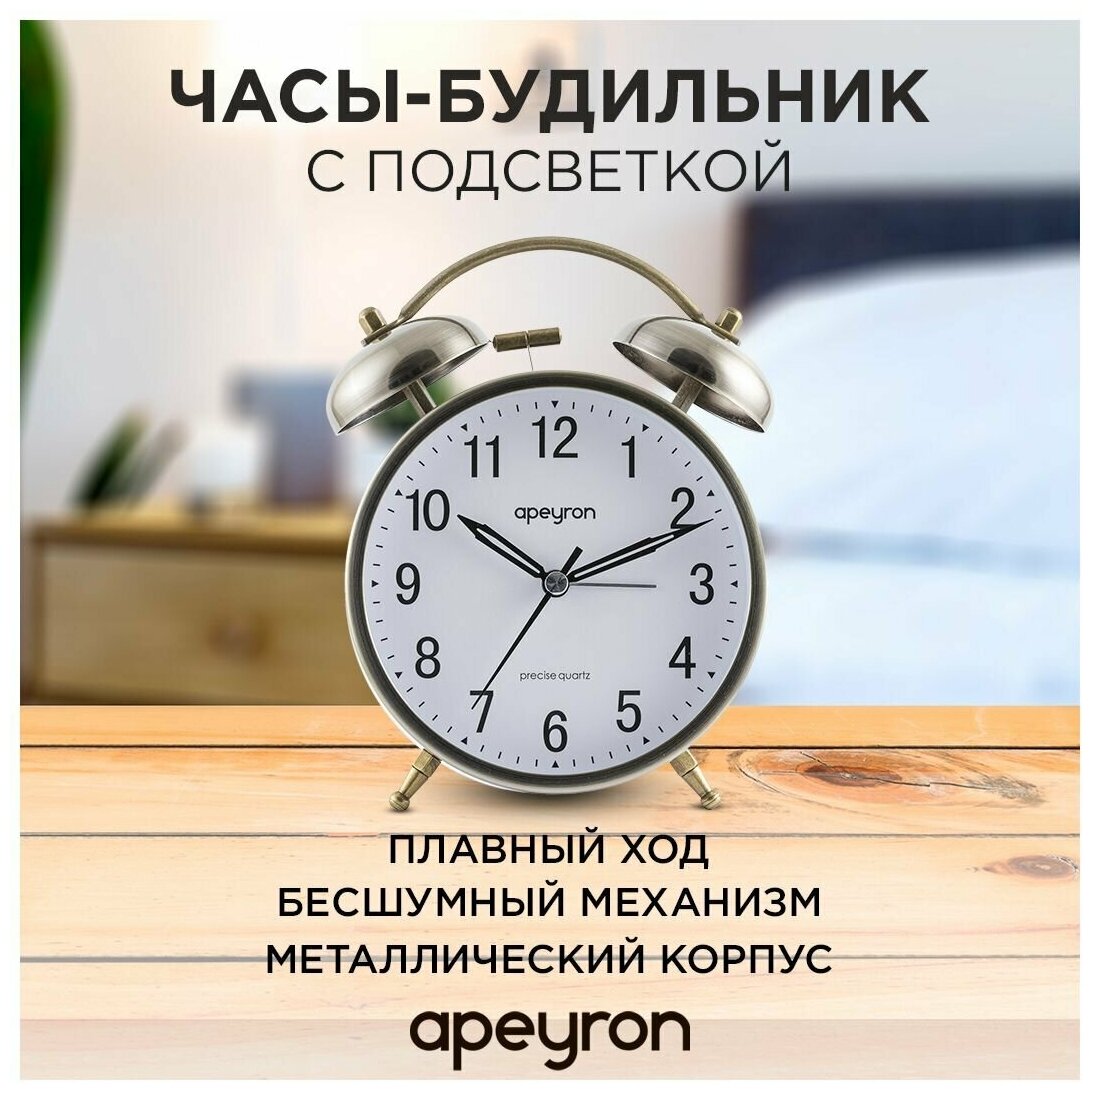 Часы-будильник с подсветкой Apeyron 15.2х11.5 см арабский циферблат бесшумный механизм с плавным ходом античная бронза MLT2207-515-5